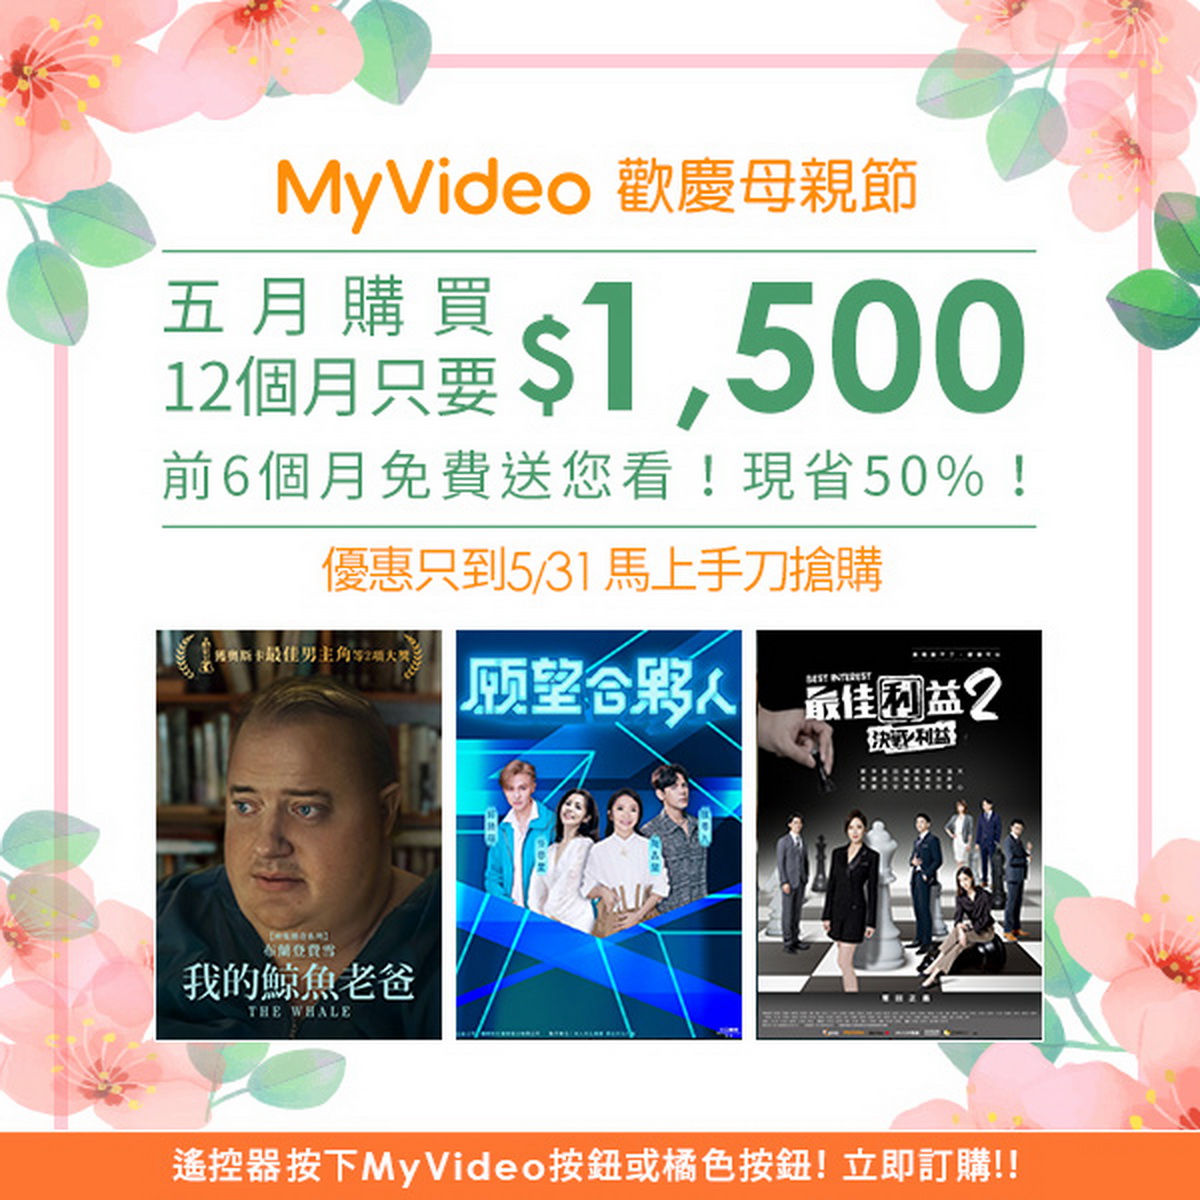 5月底前訂購MyVideo豪華月租年繳方案現省50%，前6個月免費送你看。